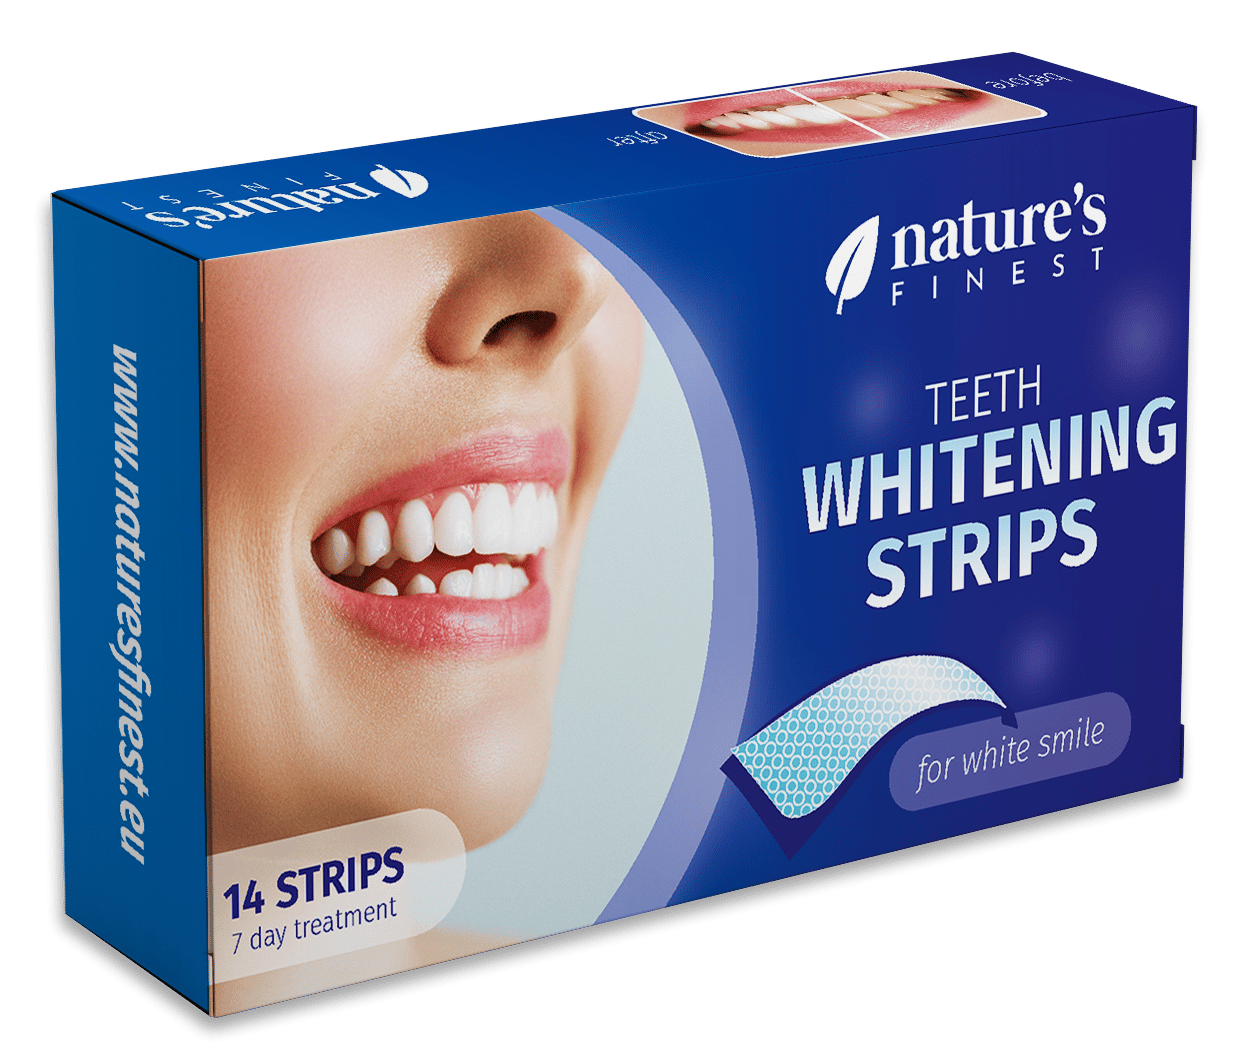 Whitening Strips , Geavanceerde Tandenbleking , Snelle Resultaten , Veilig Voor Glazuur , Geen Gevoeligheid , Eenvoudige Applicatie , 14 Strips